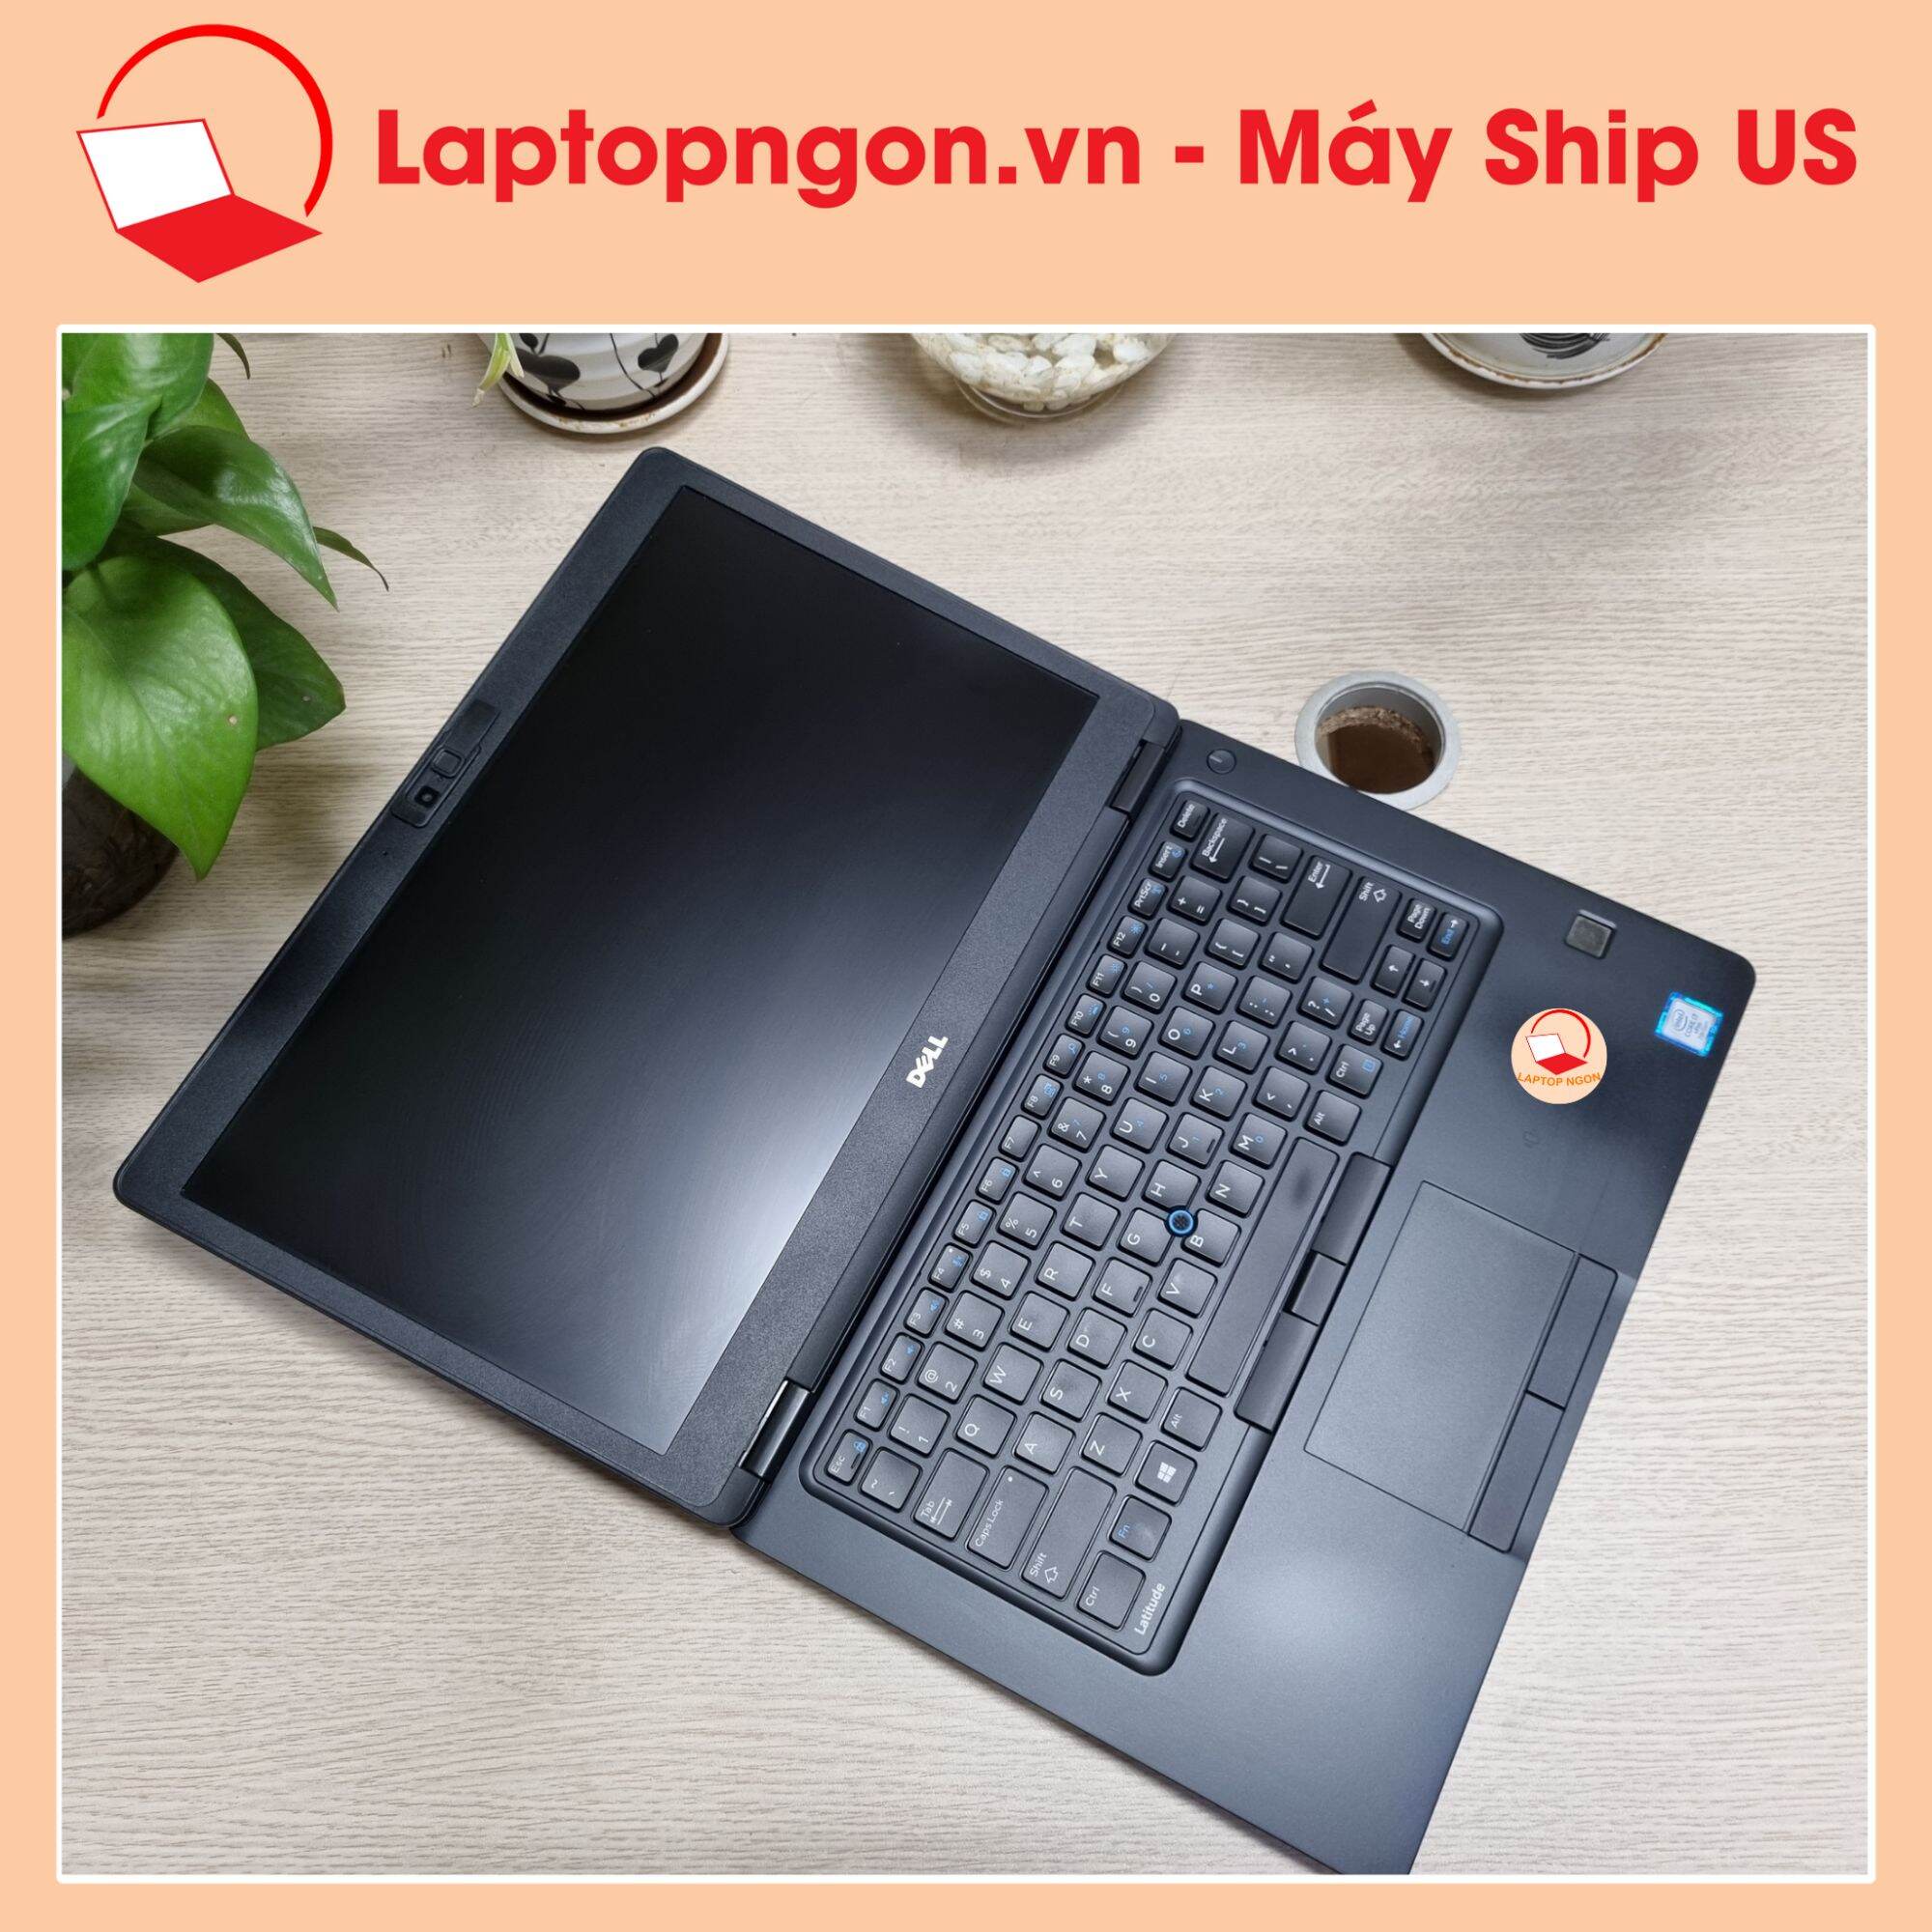 [ Laptop Ngon ] Laptop Máy Tính Dell Latitude E5480 Core i7-7820HQ Màn 14.0 FHD IPS, Intel HD 630, Góc mở 180 độ, Vân tay, Phím sáng